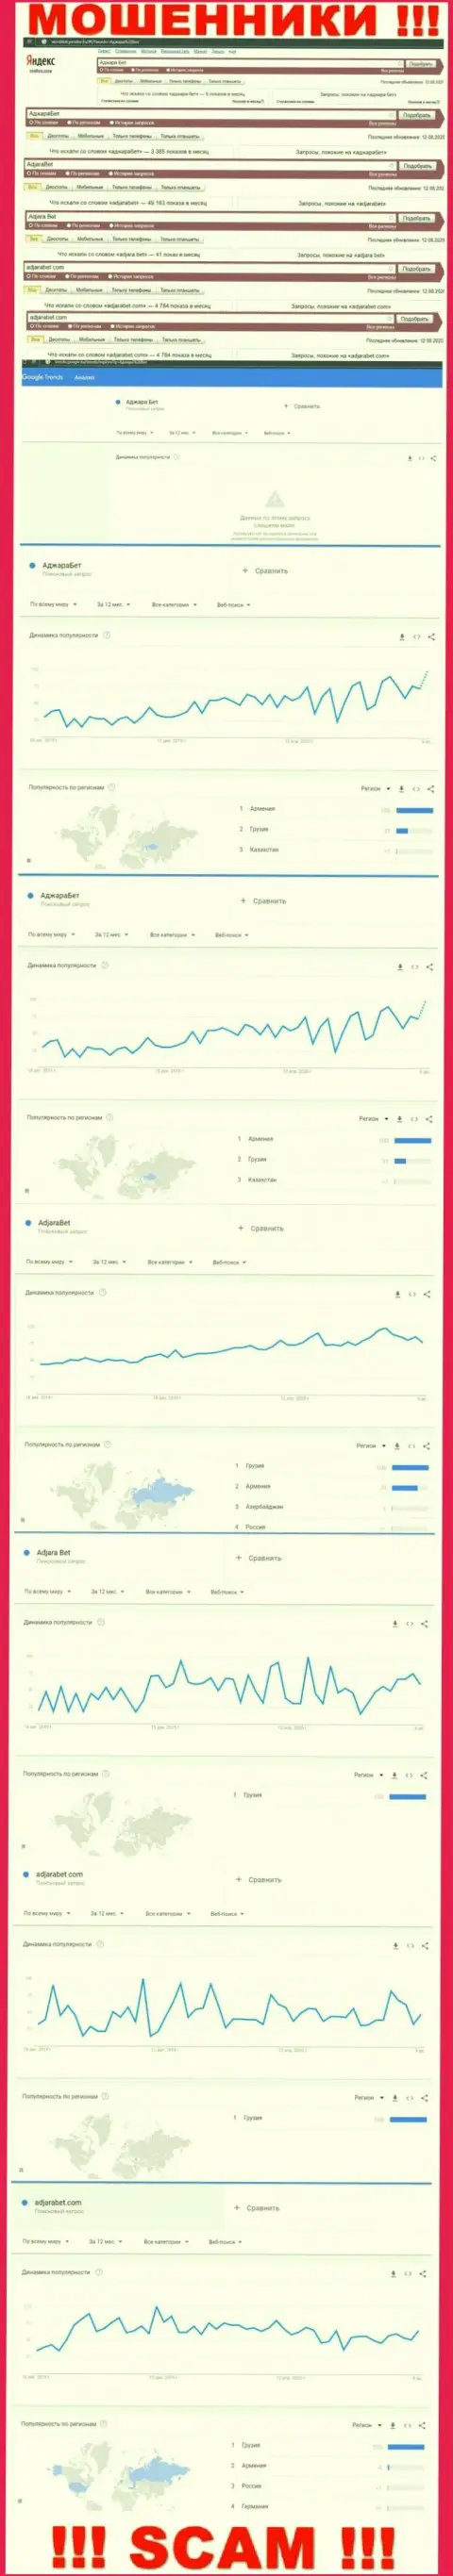 Статистические показатели числа поисковых запросов в глобальной internet сети по лохотронщикам ООО Космос